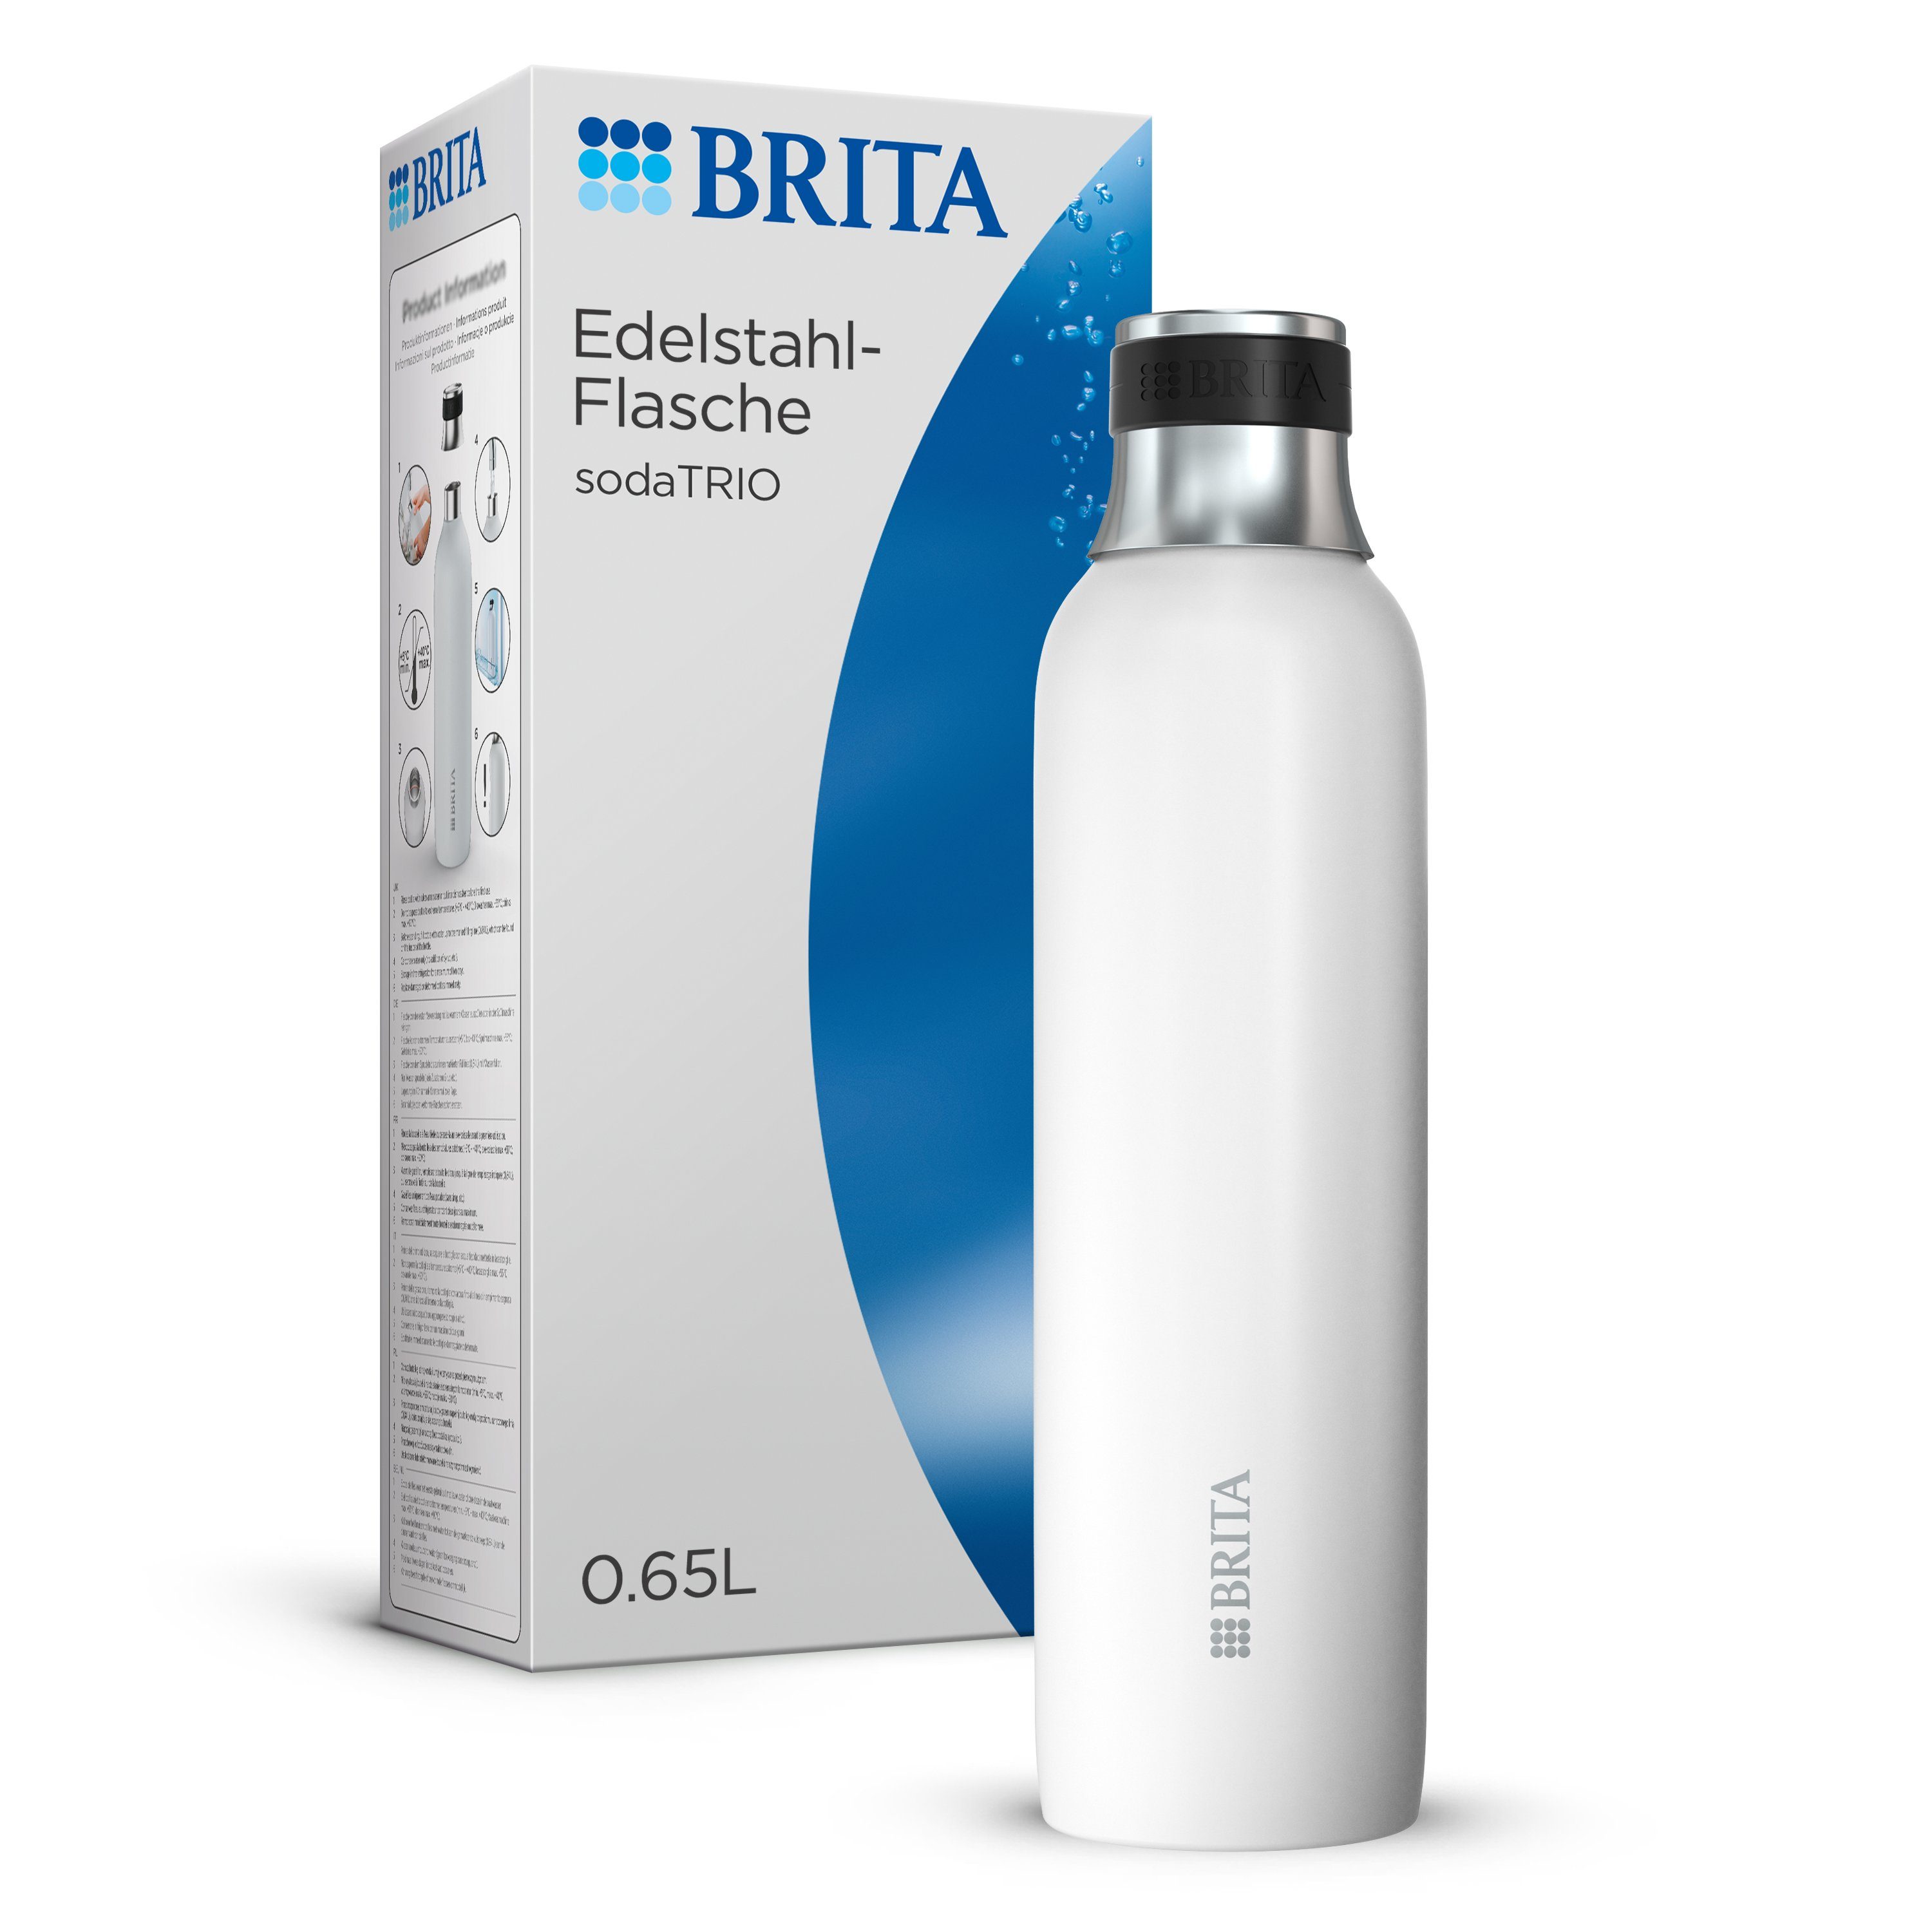 BRITA Wassersprudler Flasche sodaTRIO, isolierte & doppelwandige Premium Edelstahl Flasche, 0,65l